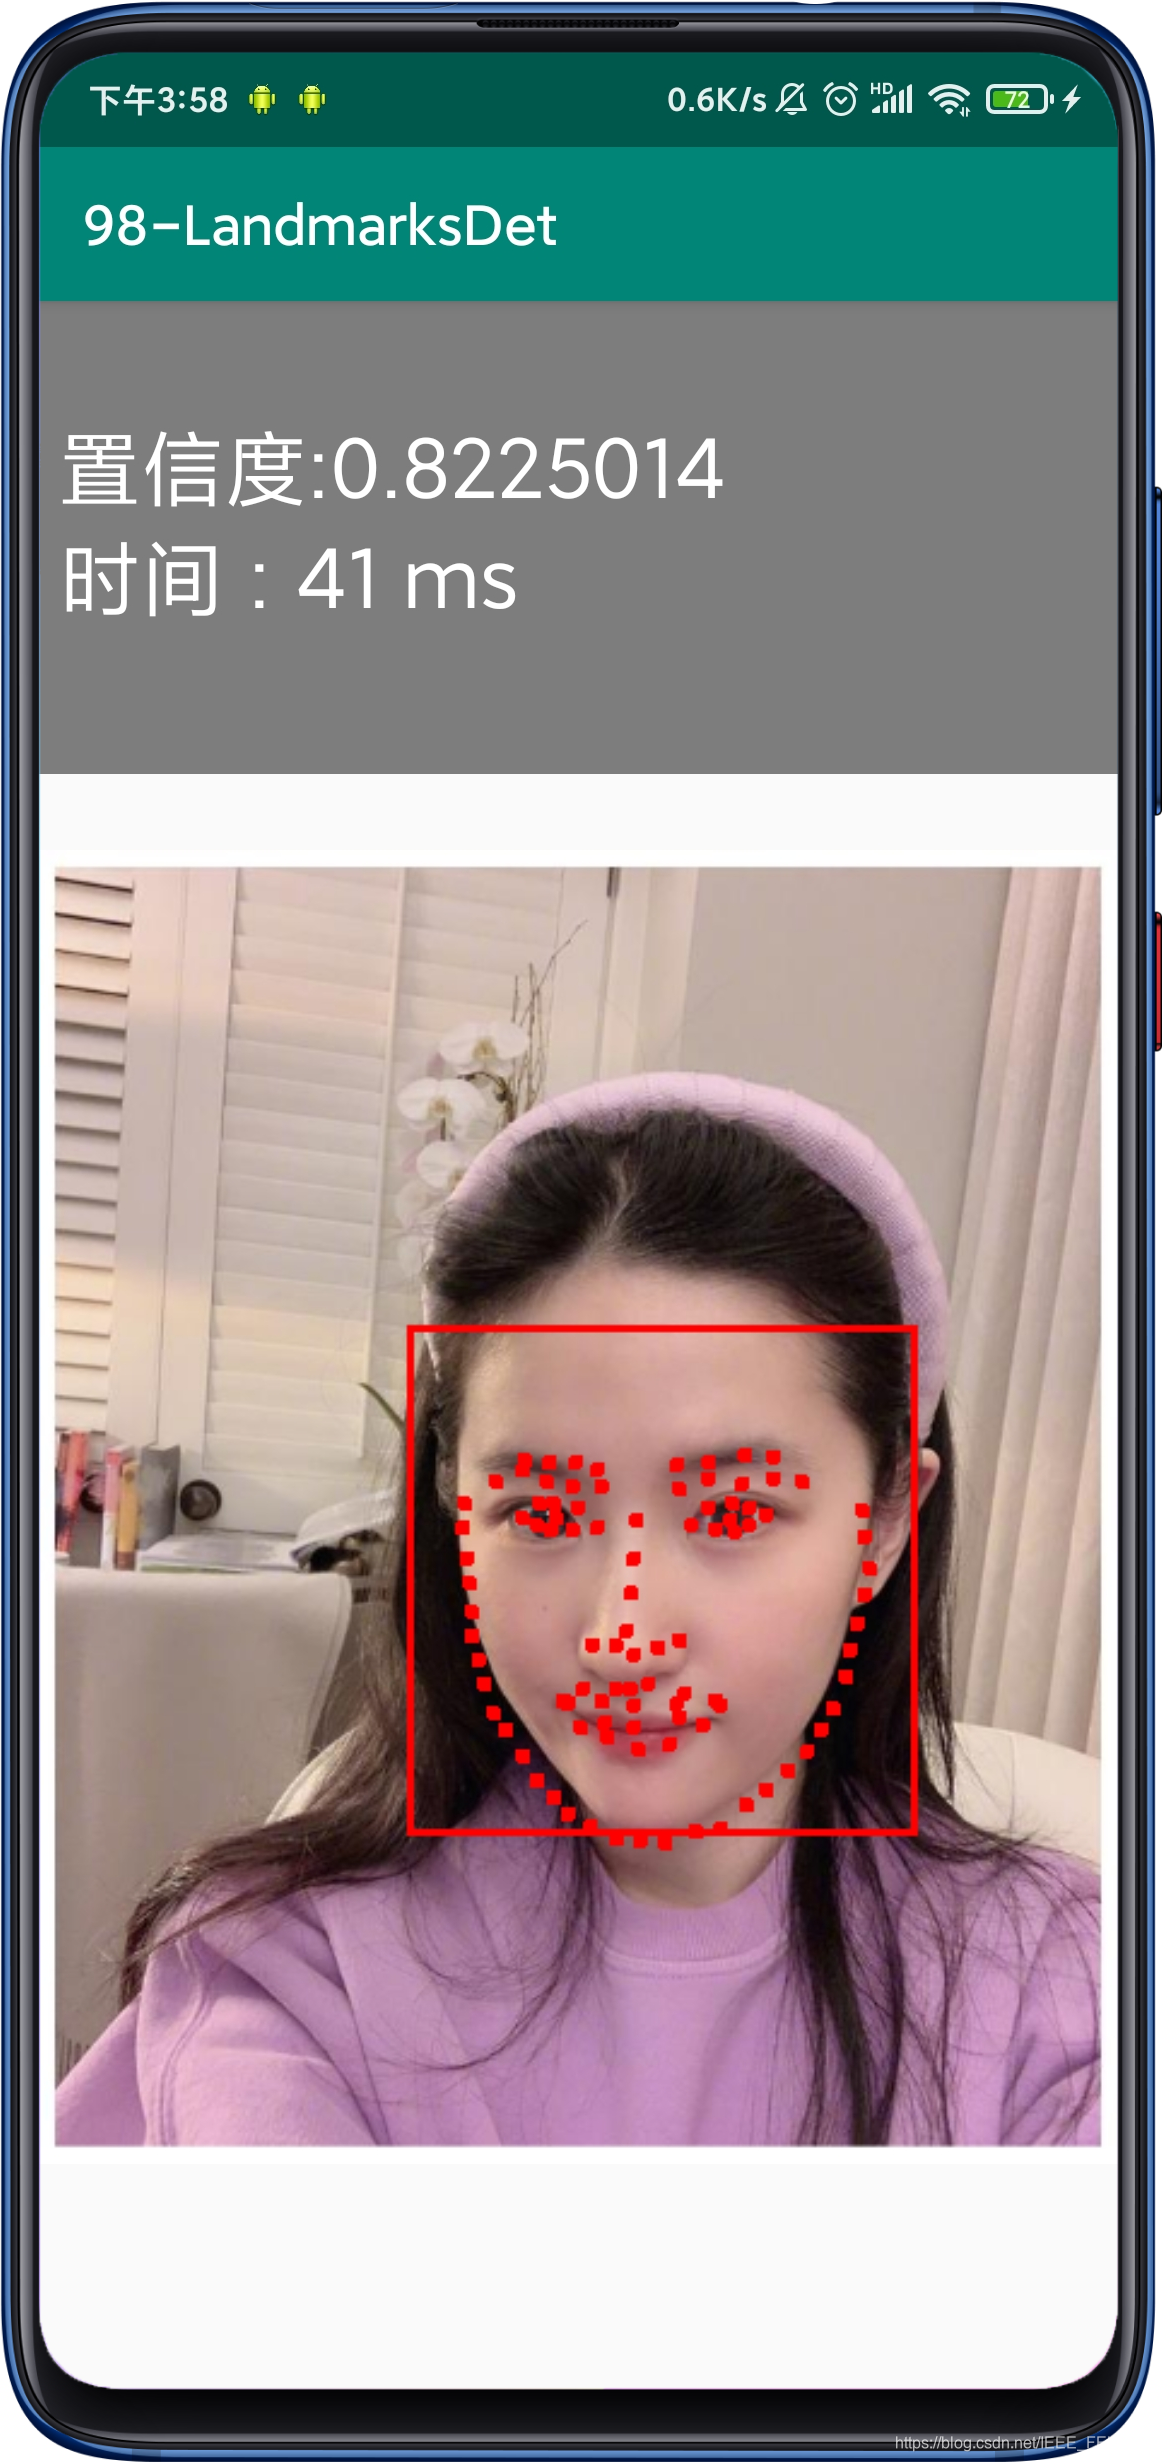 表情识别_python基于opencv的人脸表情识别系统[源码＆部署教程](代码片段)